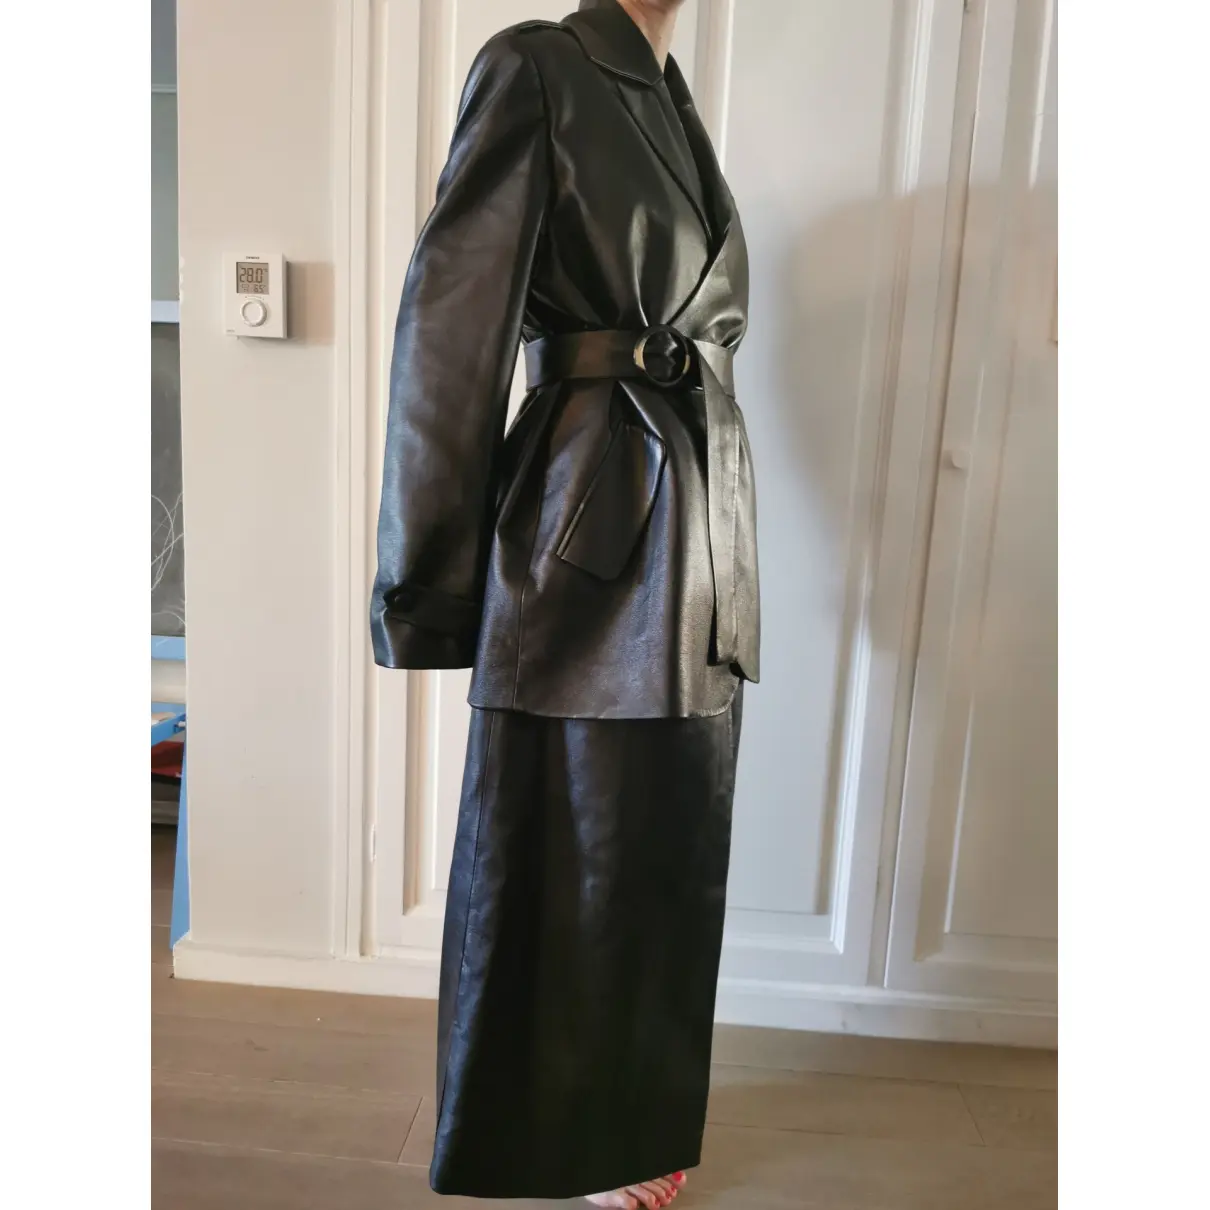 Buy Matériel Leather coat online